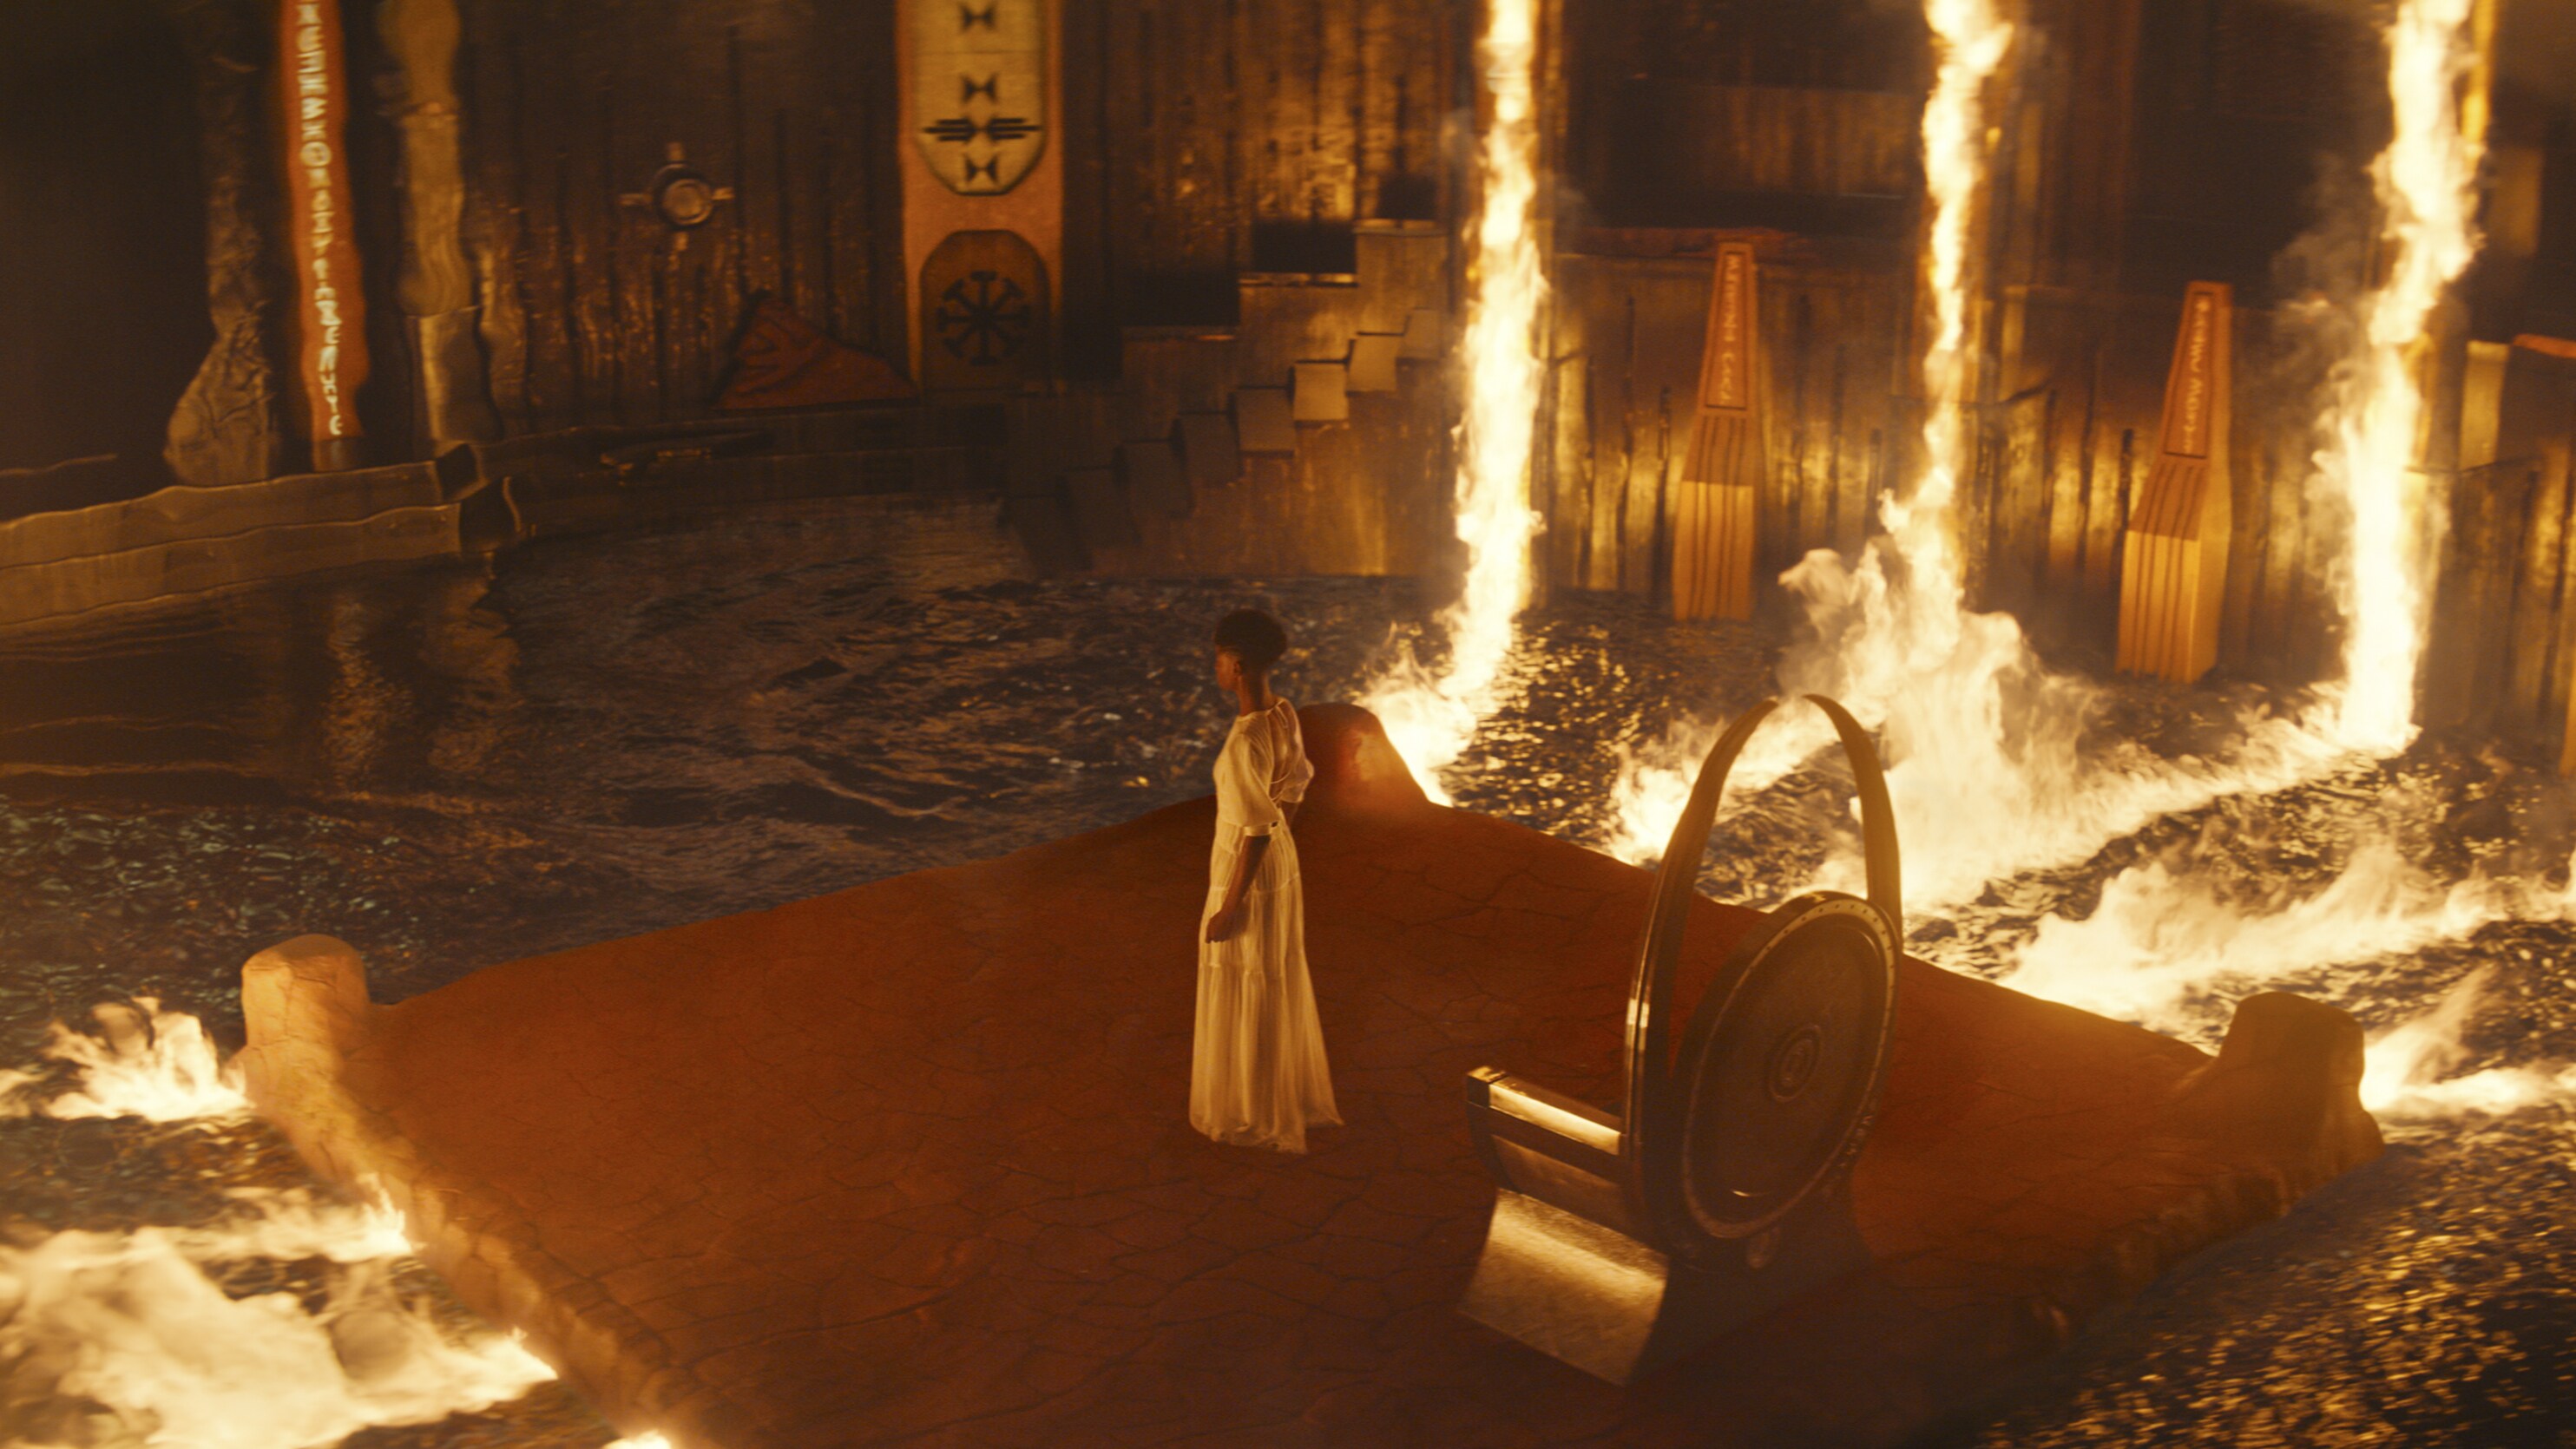 Shuri stood in a fiery room.